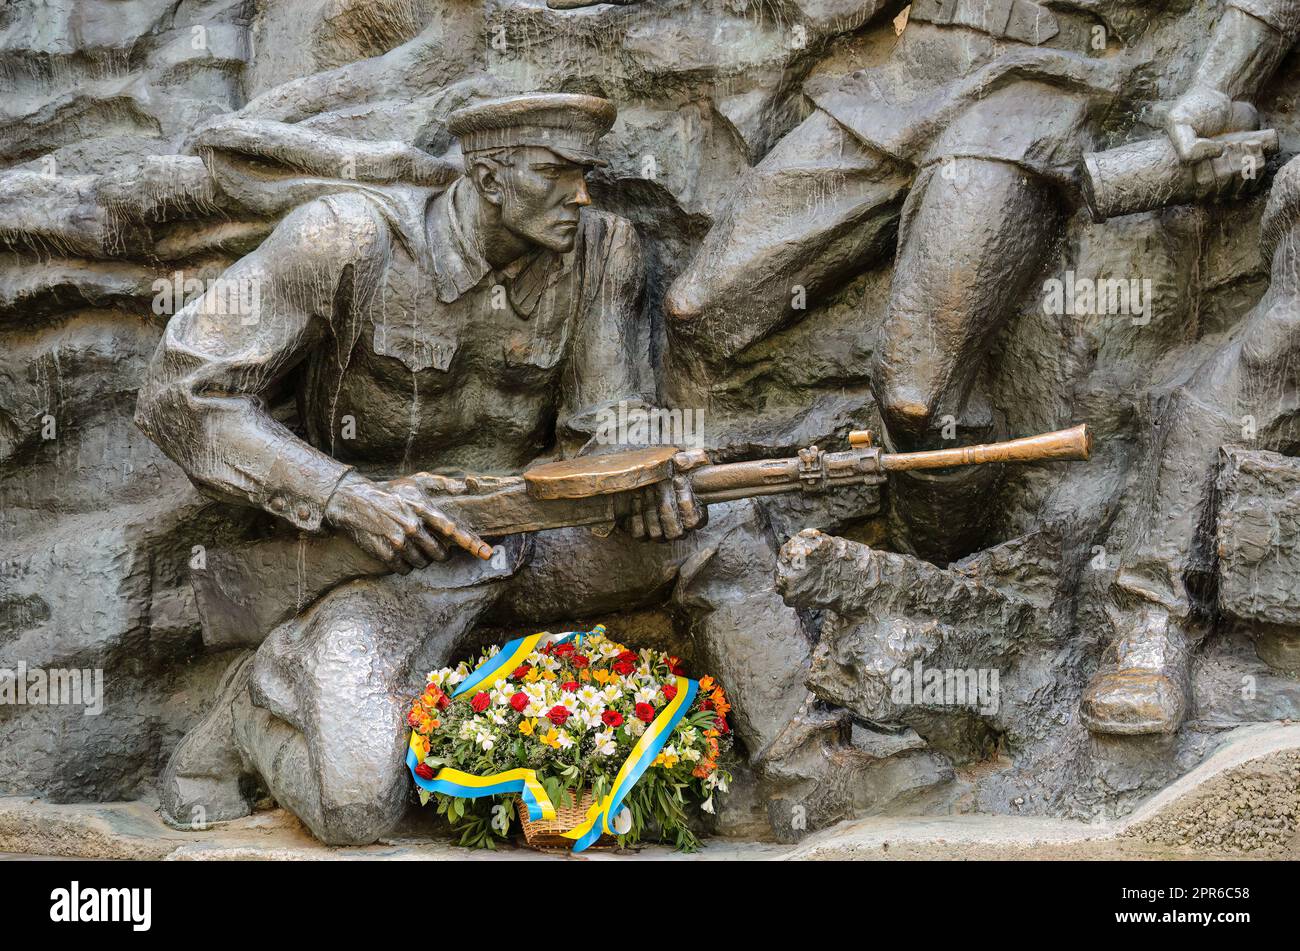 WW2 memorial in Kiev - Ukraine Stock Photo